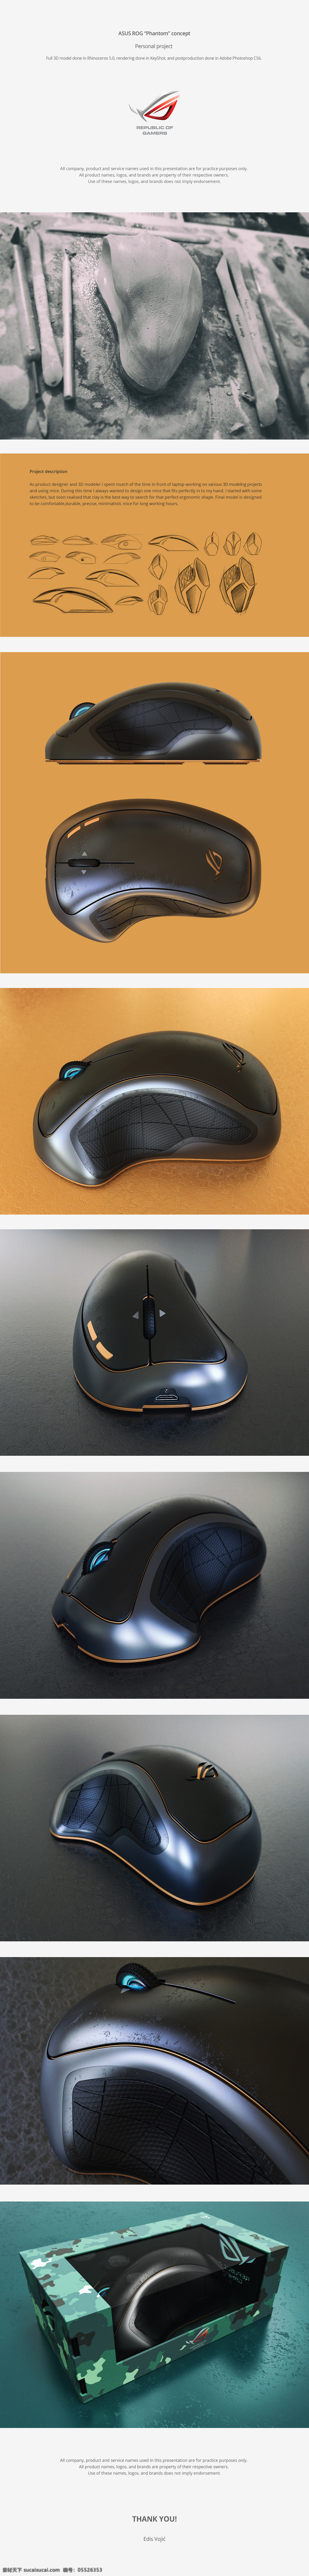 电脑 工业产品 鼠标 鼠标设计 数码 游戏鼠标